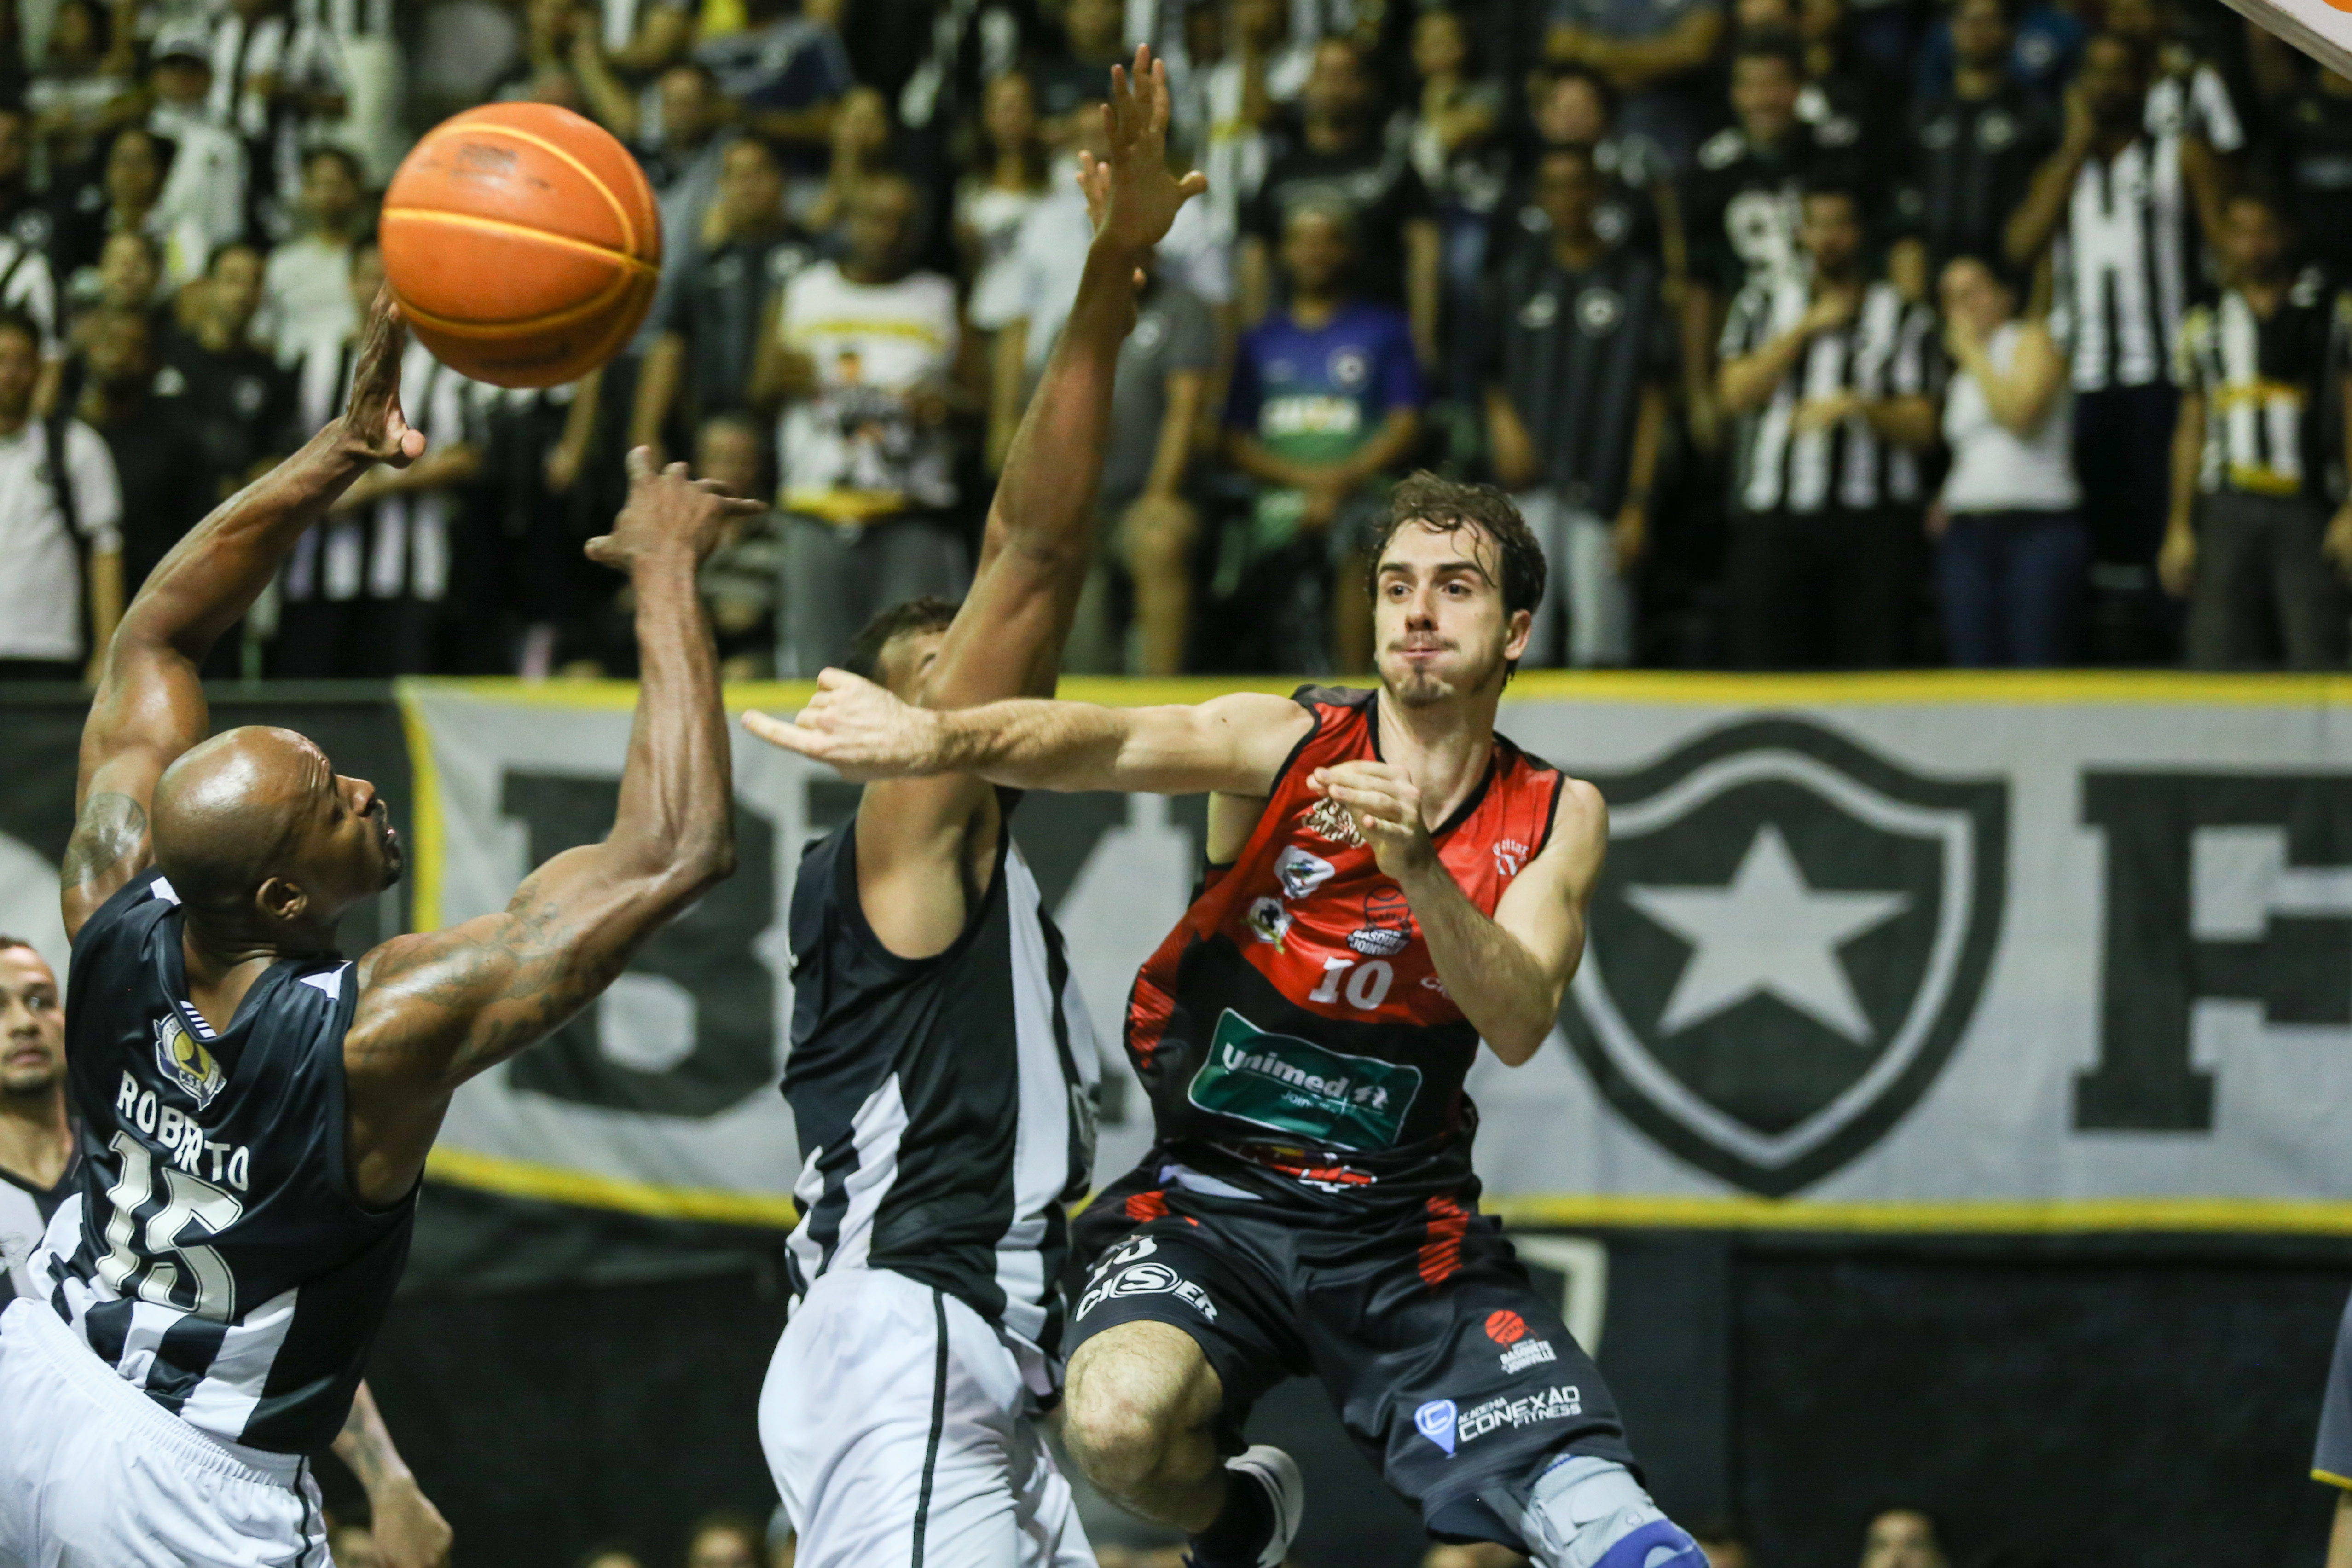 Basquete: Botafogo vence Nacional-URU e segue bem na briga para ir à final  da Liga Sul-Americana - FogãoNET